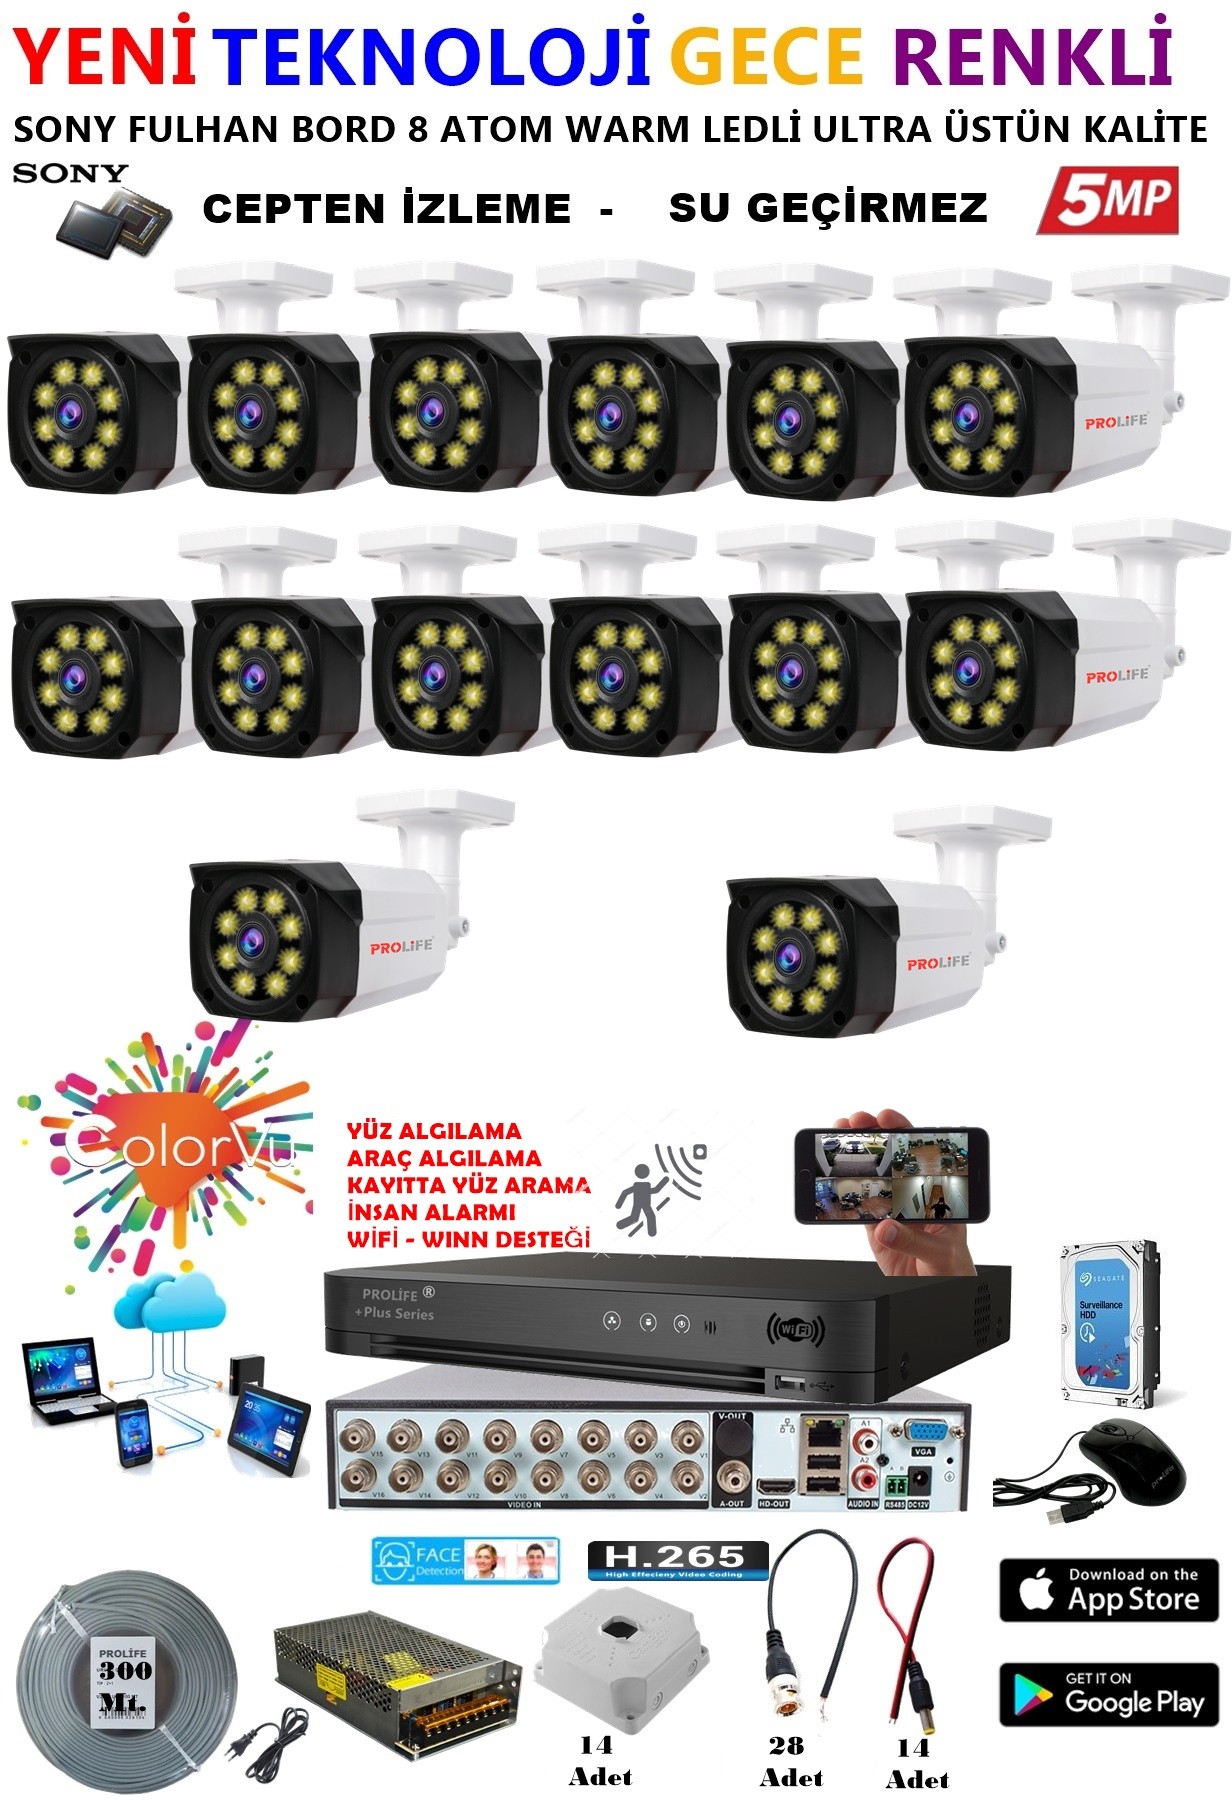 14 Kameralı 5 MP Gece Renkli Yapay Zeka Yüz ve Araç Algılamalı Olay Anı Bildirimli Kuruluma Hazır Kamera Seti